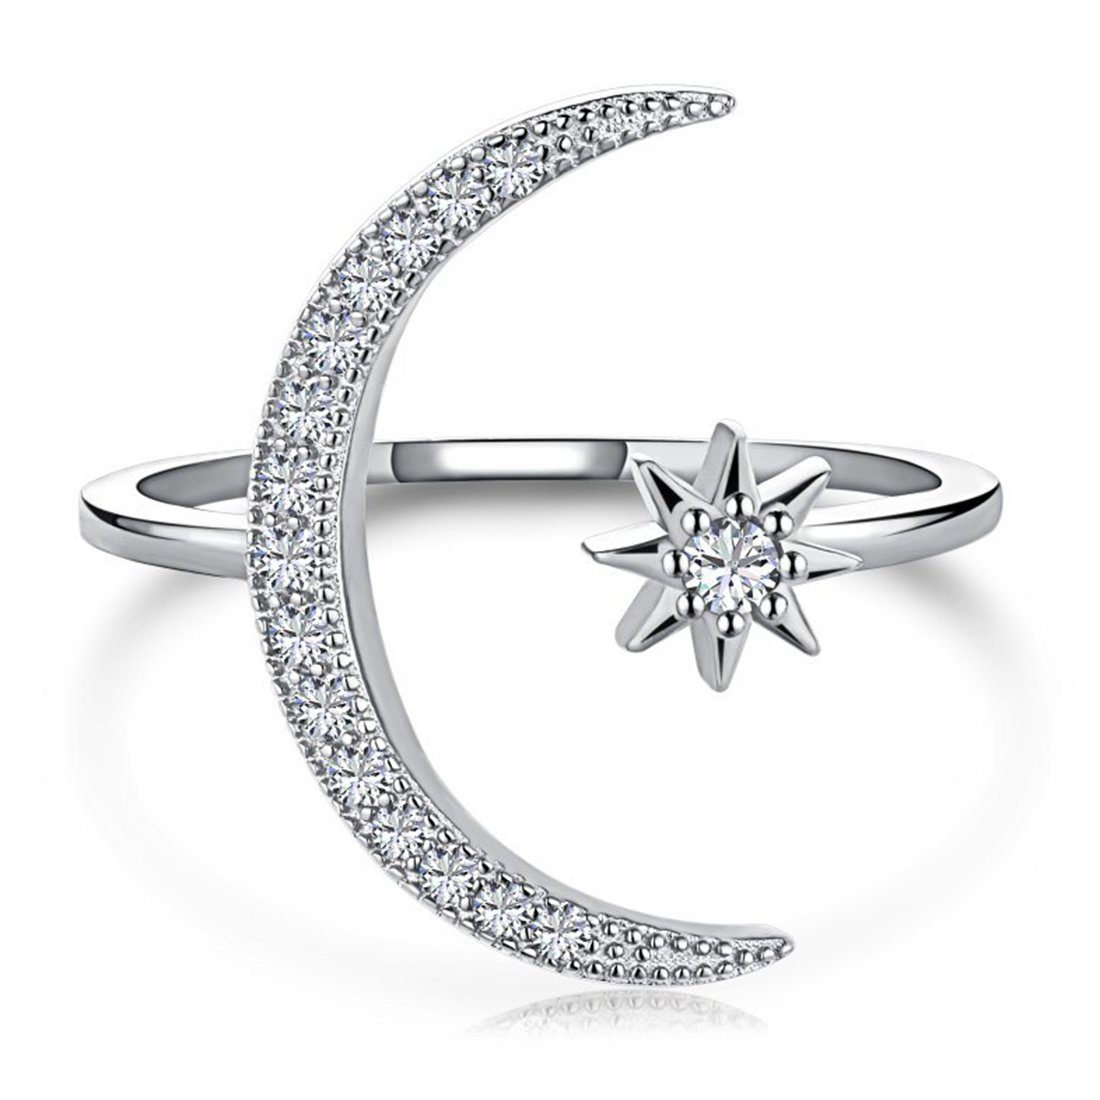 Haiaveng Fingerring Mond und Stern Mond Ringe,Ringe aus Sterlingsilber S925, Stern- und Mondring mit Diamanten, offener und verstellbarer Ring